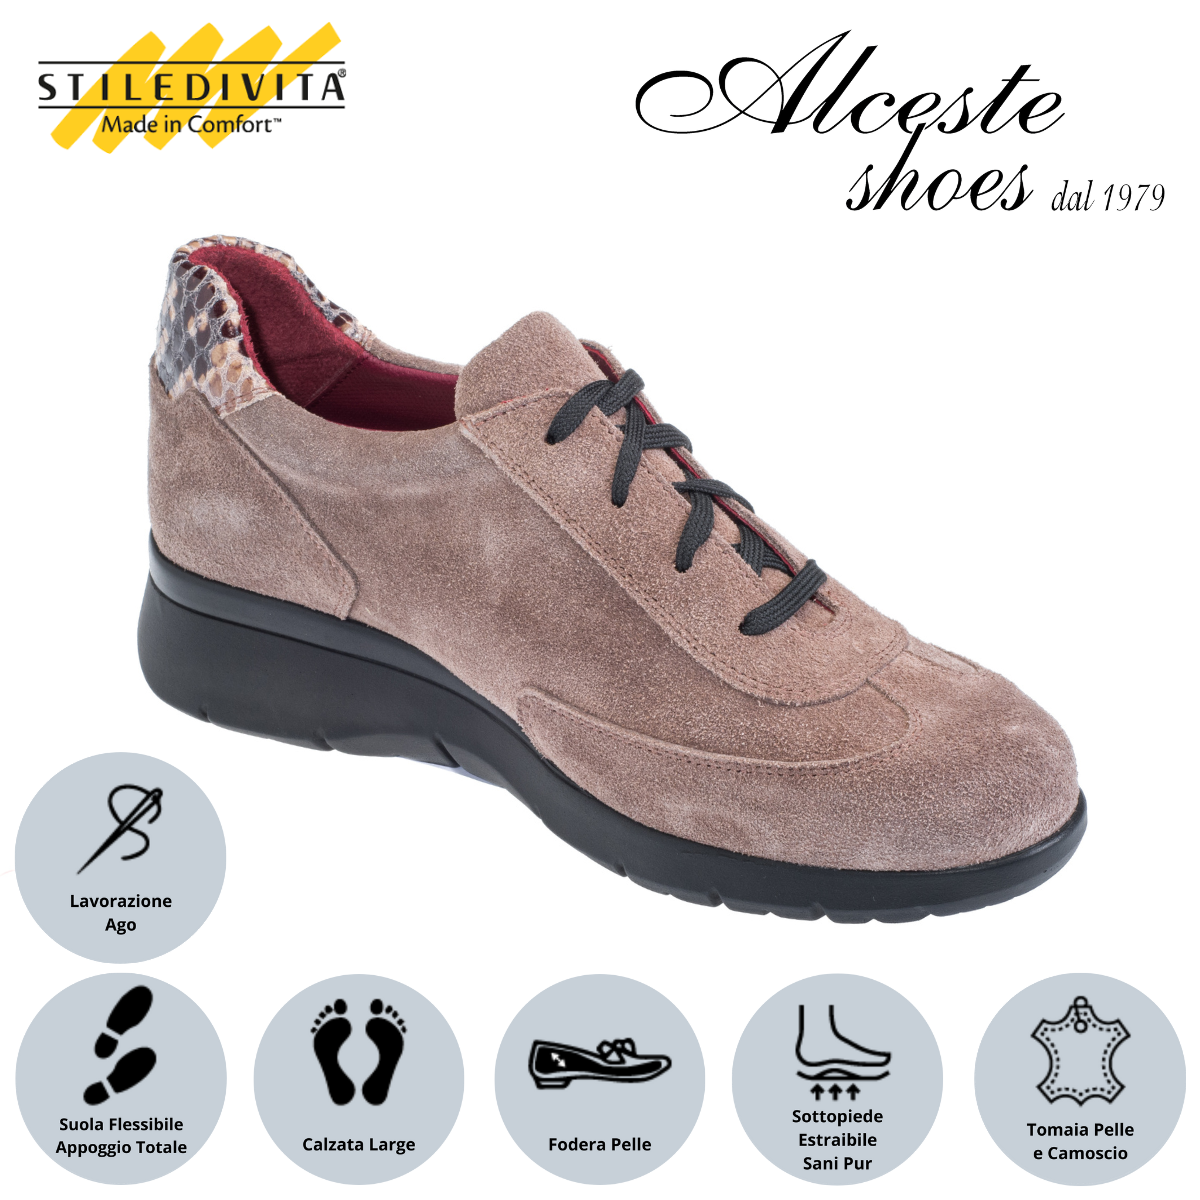 Sneakers Donna con Lacci e Cerniera "Stiledivita" Art. 9113 in Pelle Roccia e Camoscio Taupe Alceste Shoes 31